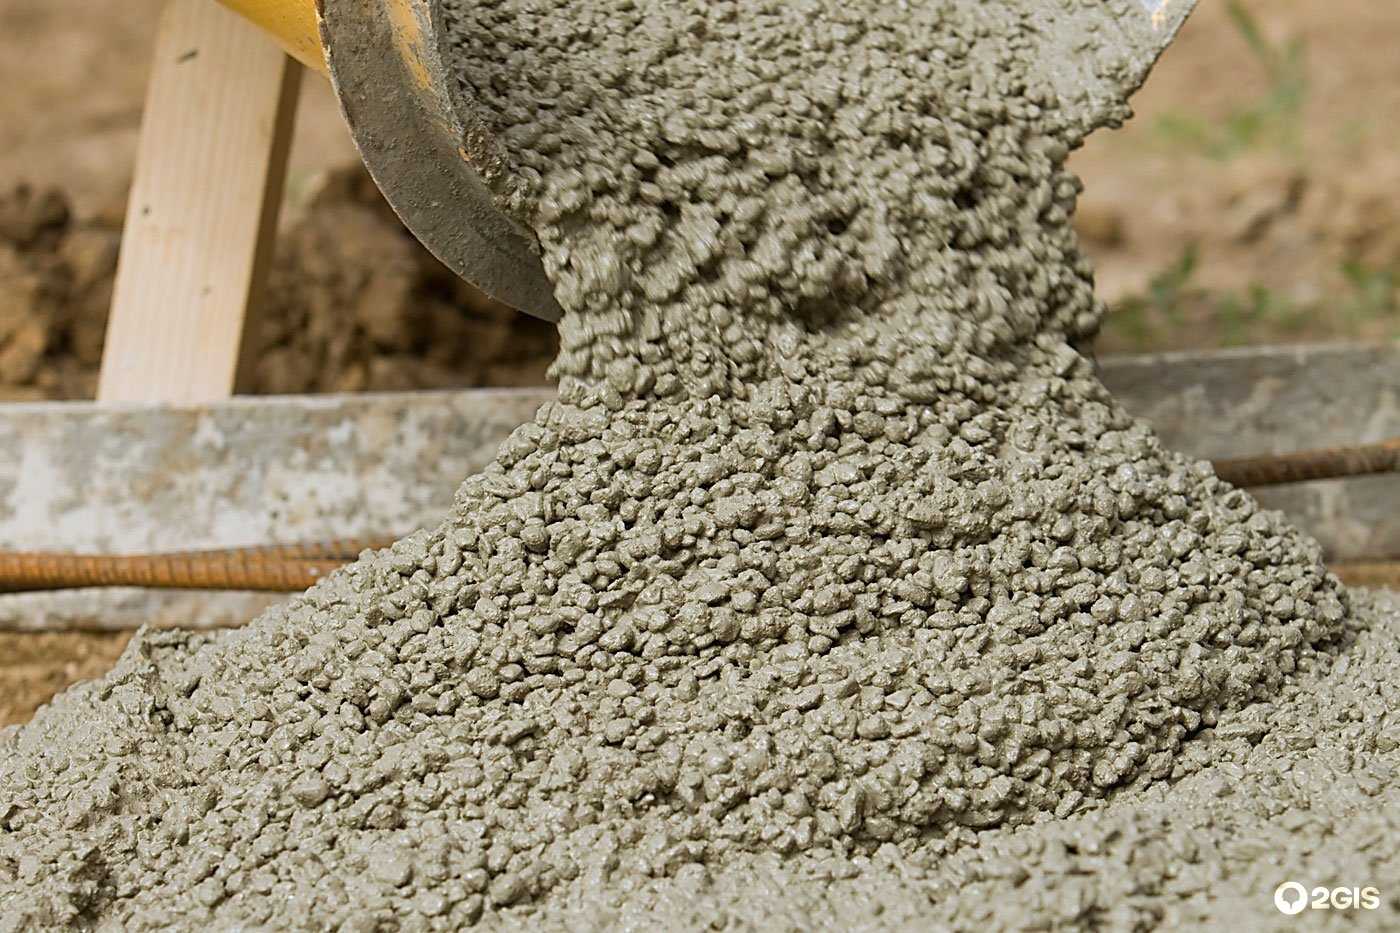 Товарный бетон является материалом заводского производства, который изготавливается по определенным пропорциям и обладает характеристиками, которые выше, чем у материала, сделанного собственноручно